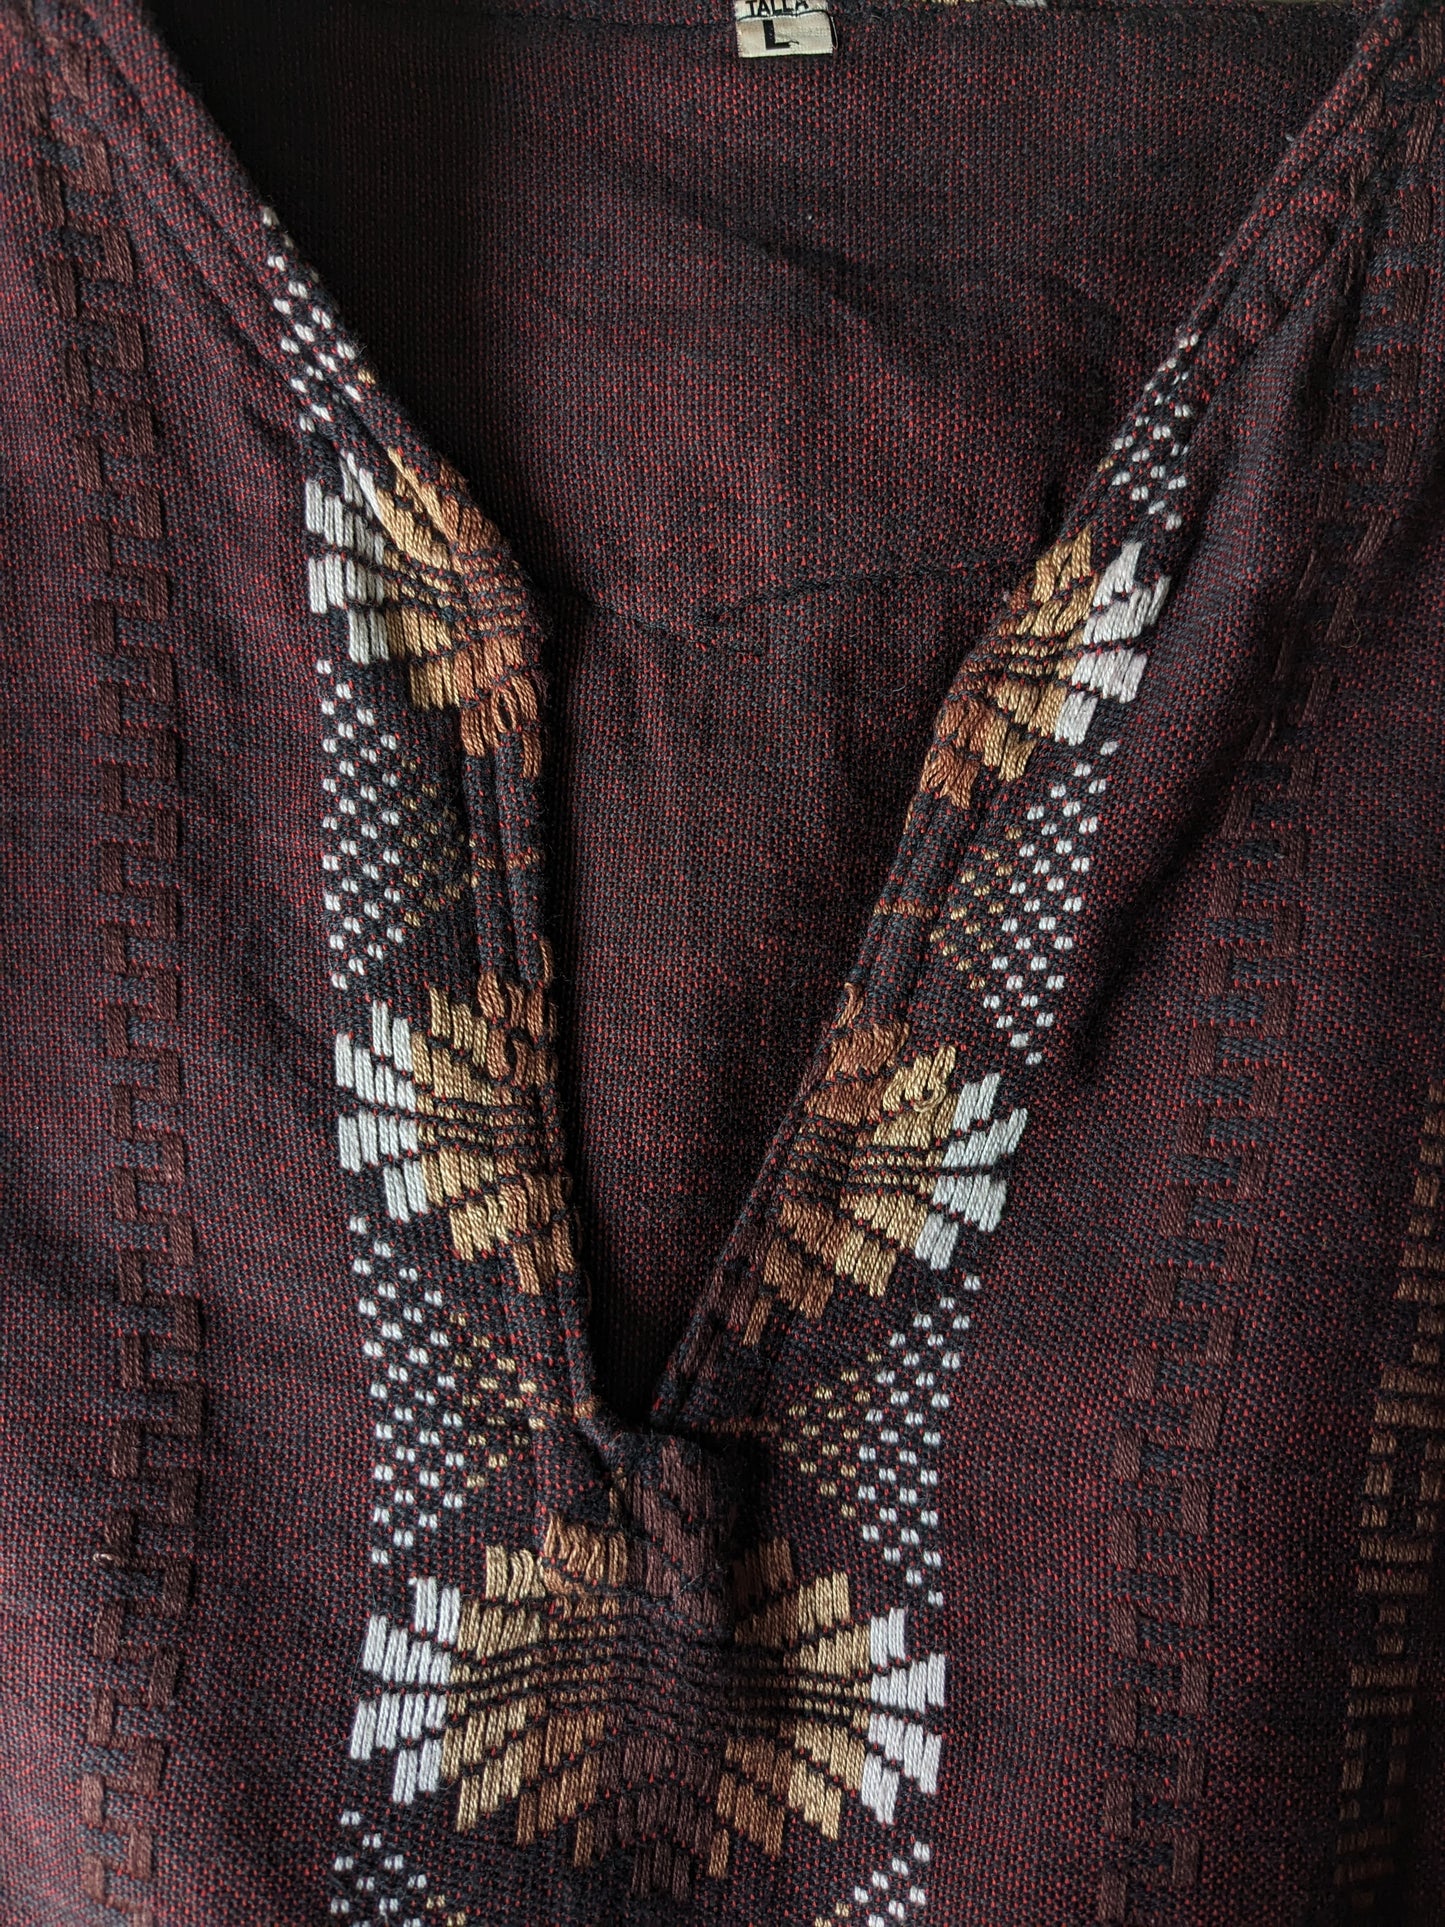 Camicia vintage con scollo a V. Black rosso miscelato, con motivo bianco marrone. Taglia L.